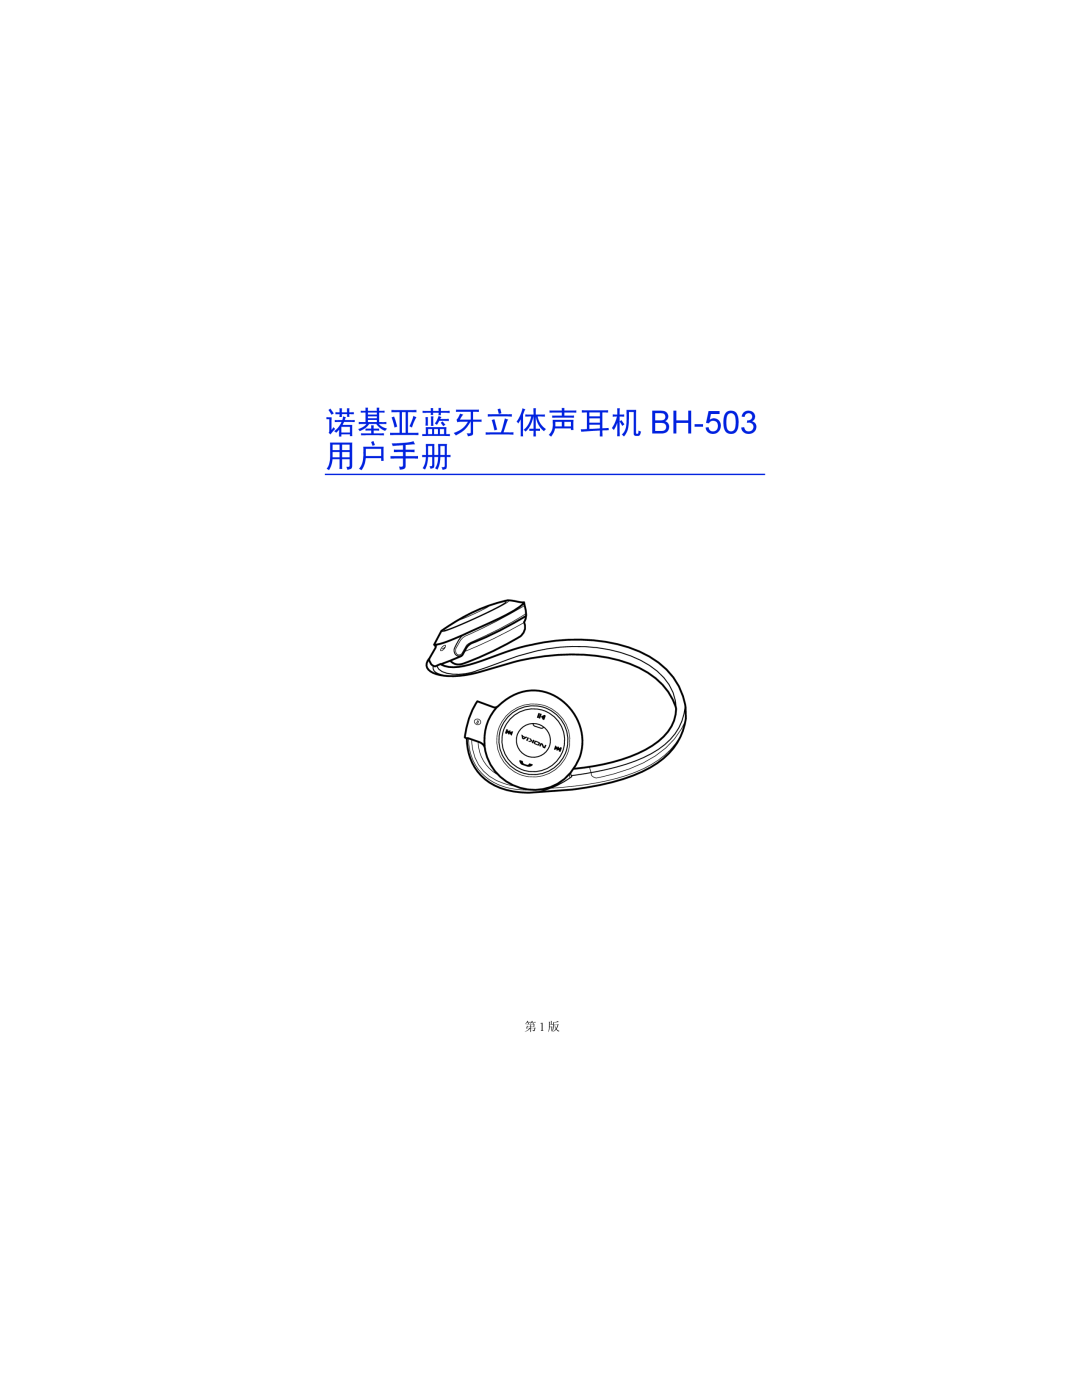 Nokia manual 诺基亚蓝牙立体声耳机 BH-503 用户手册, 第 1 版 